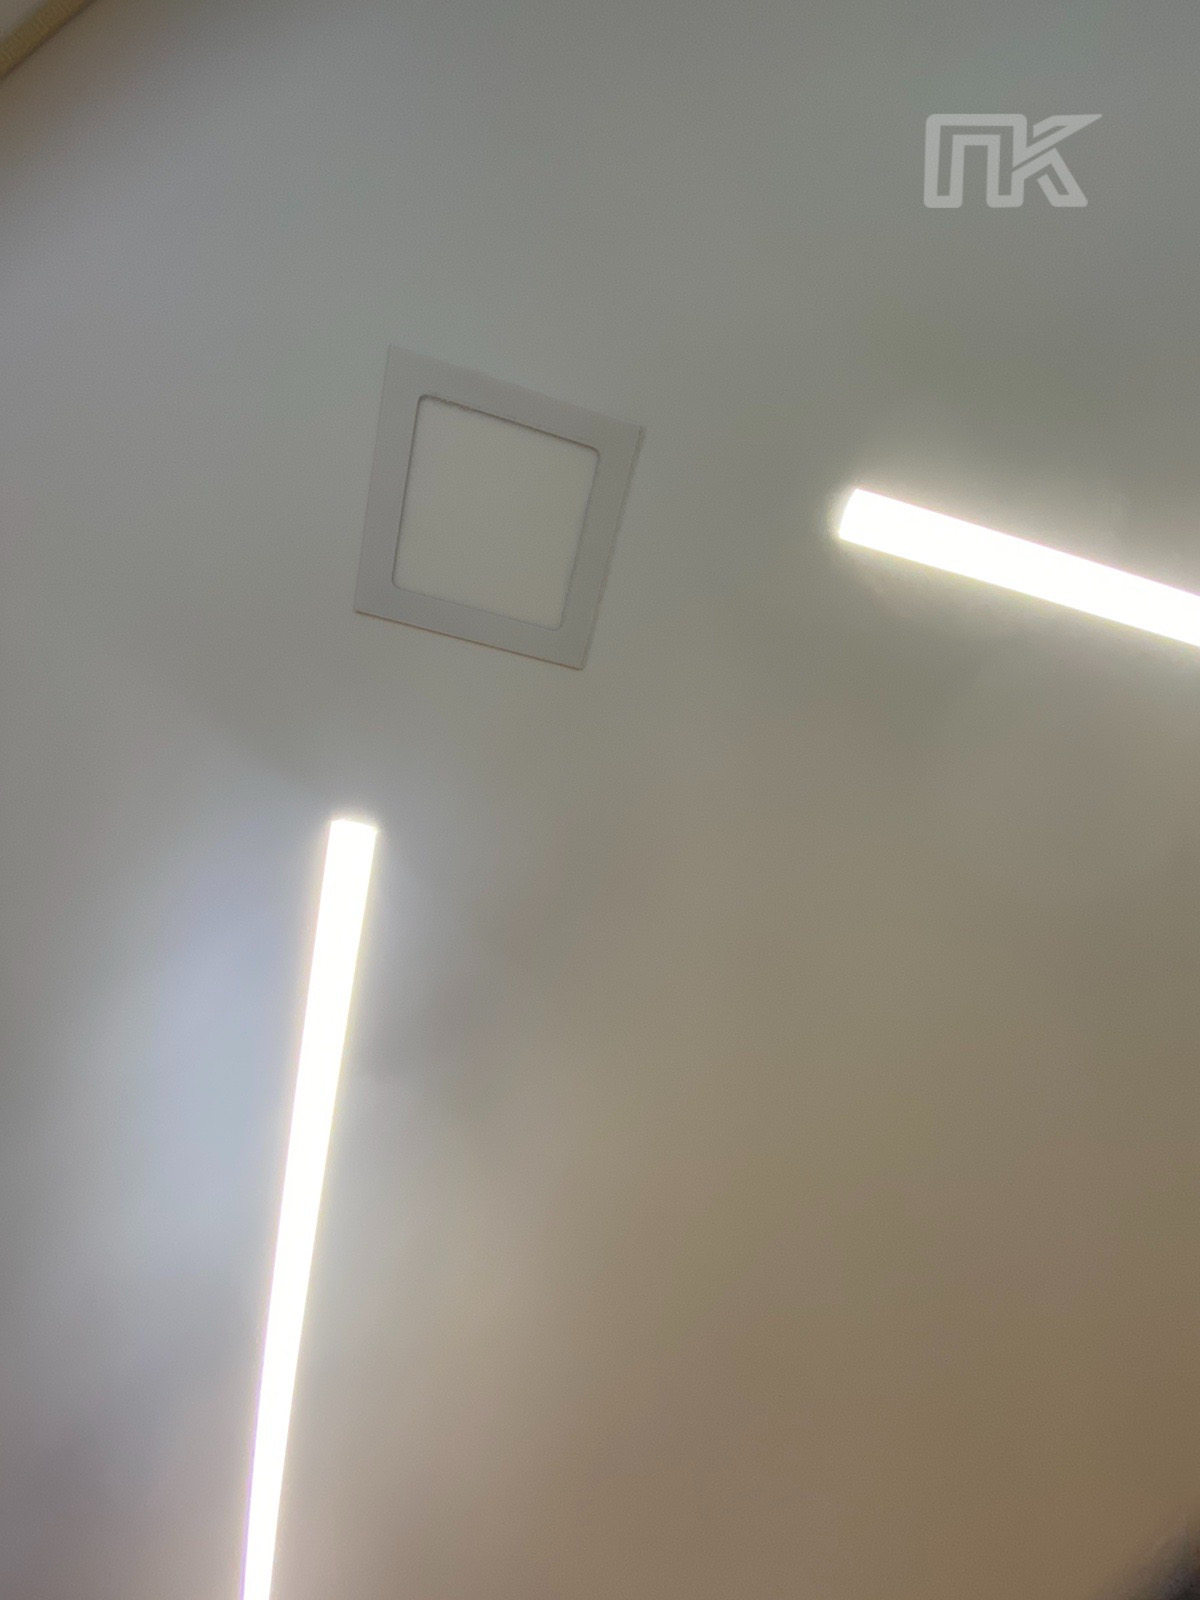 Потолок со световыми линиями